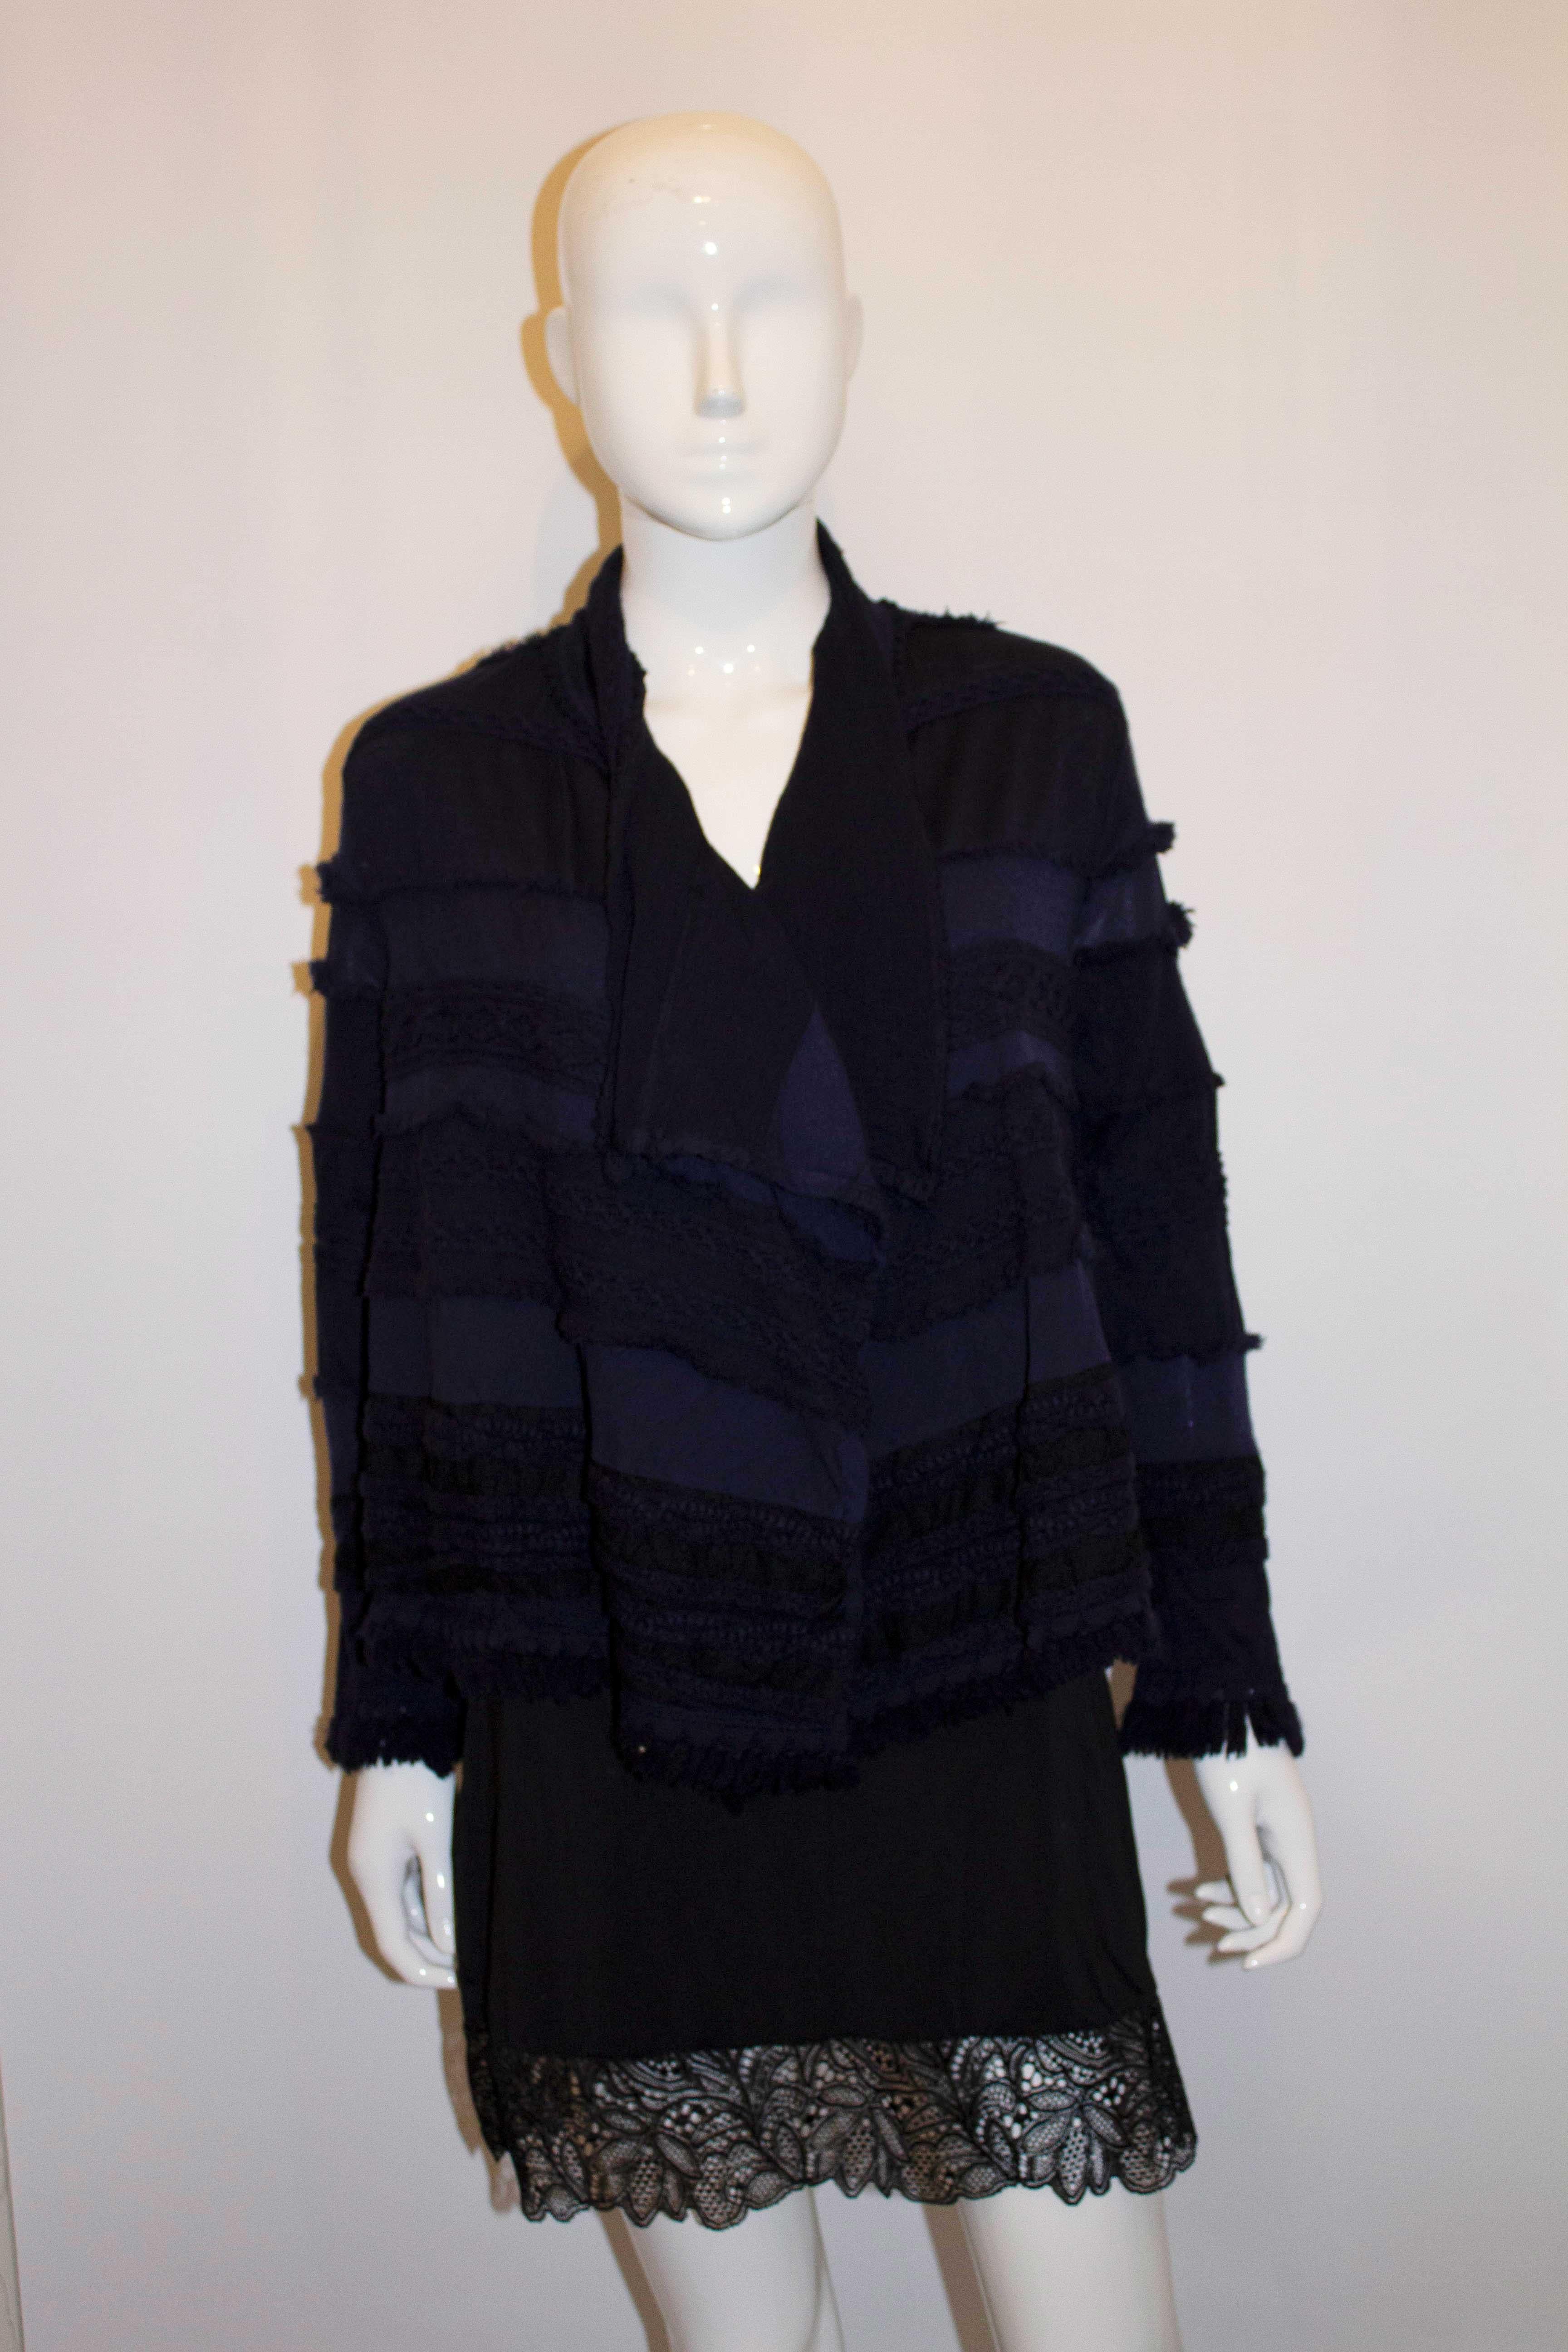 Une veste en laine facile à porter de la ligne Hatat de Miyake. Les manches et l'ourlet sont garnis de franges et le tissu est orné de galons et d'autres décorations. La veste est de couleur bleu encre foncé/noir, et n'est pas doublée. Taille 2